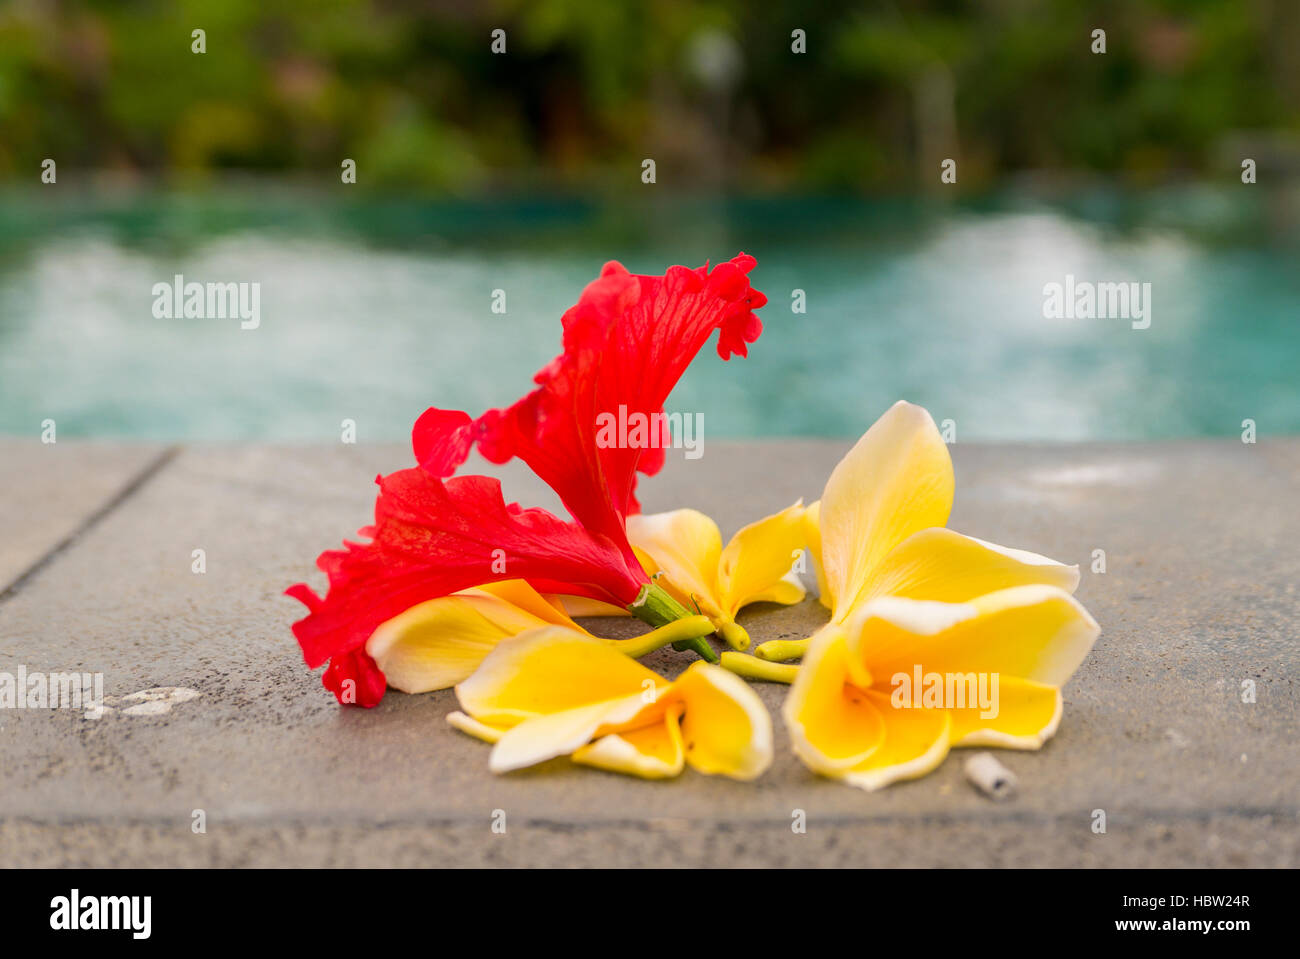 Offerte di religiosi in Bali, fiori colorati accanto alla piscina Foto Stock